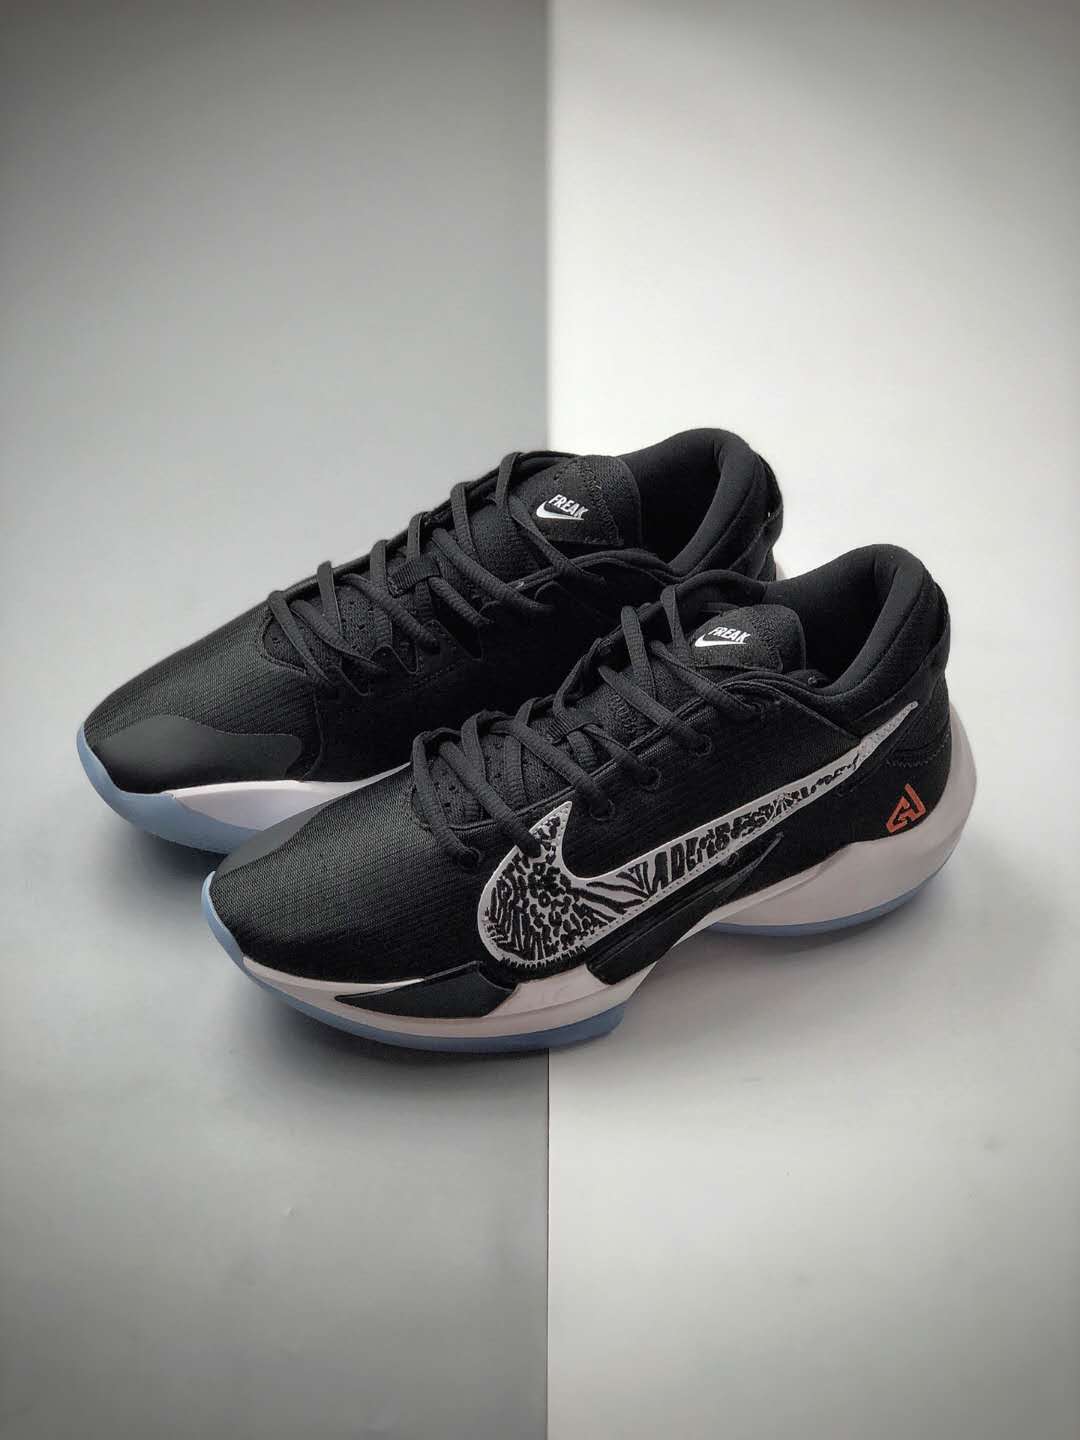 Nike Zoom Freak 2 'Black' CK5424-001 | Elite Performance Basketball Sneakers